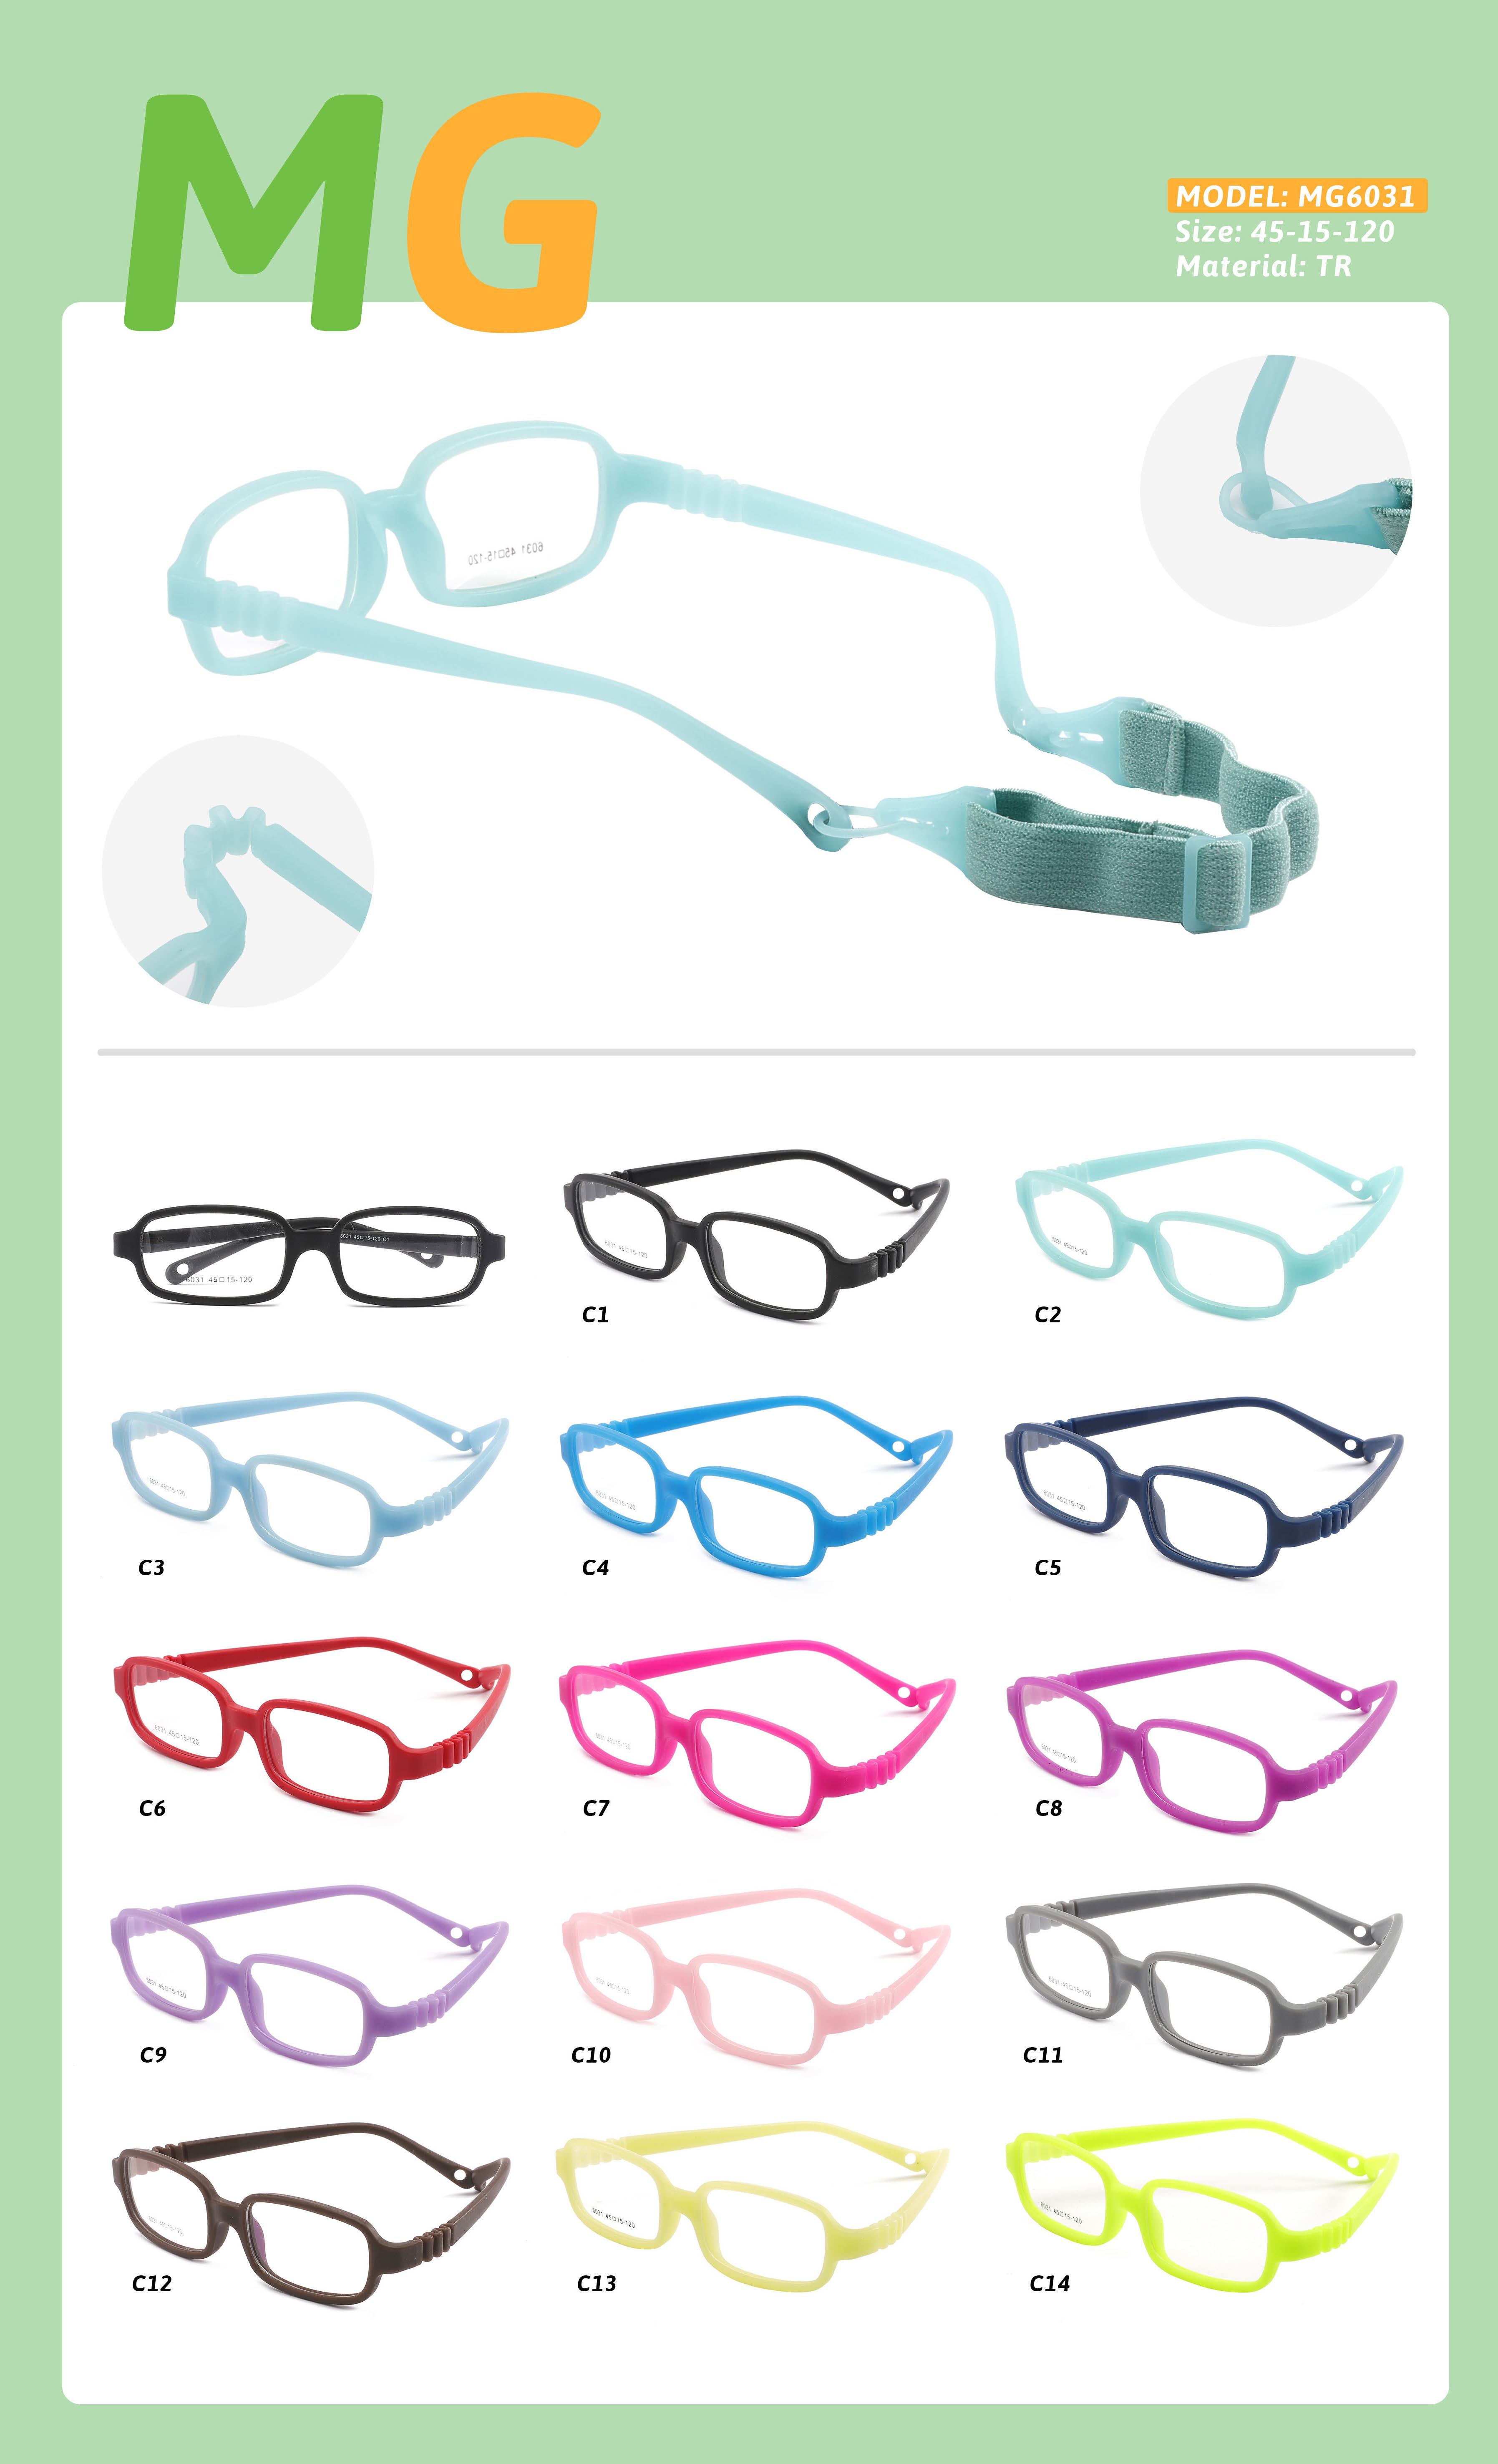 Korniza fleksibël e syzeve për fëmijë